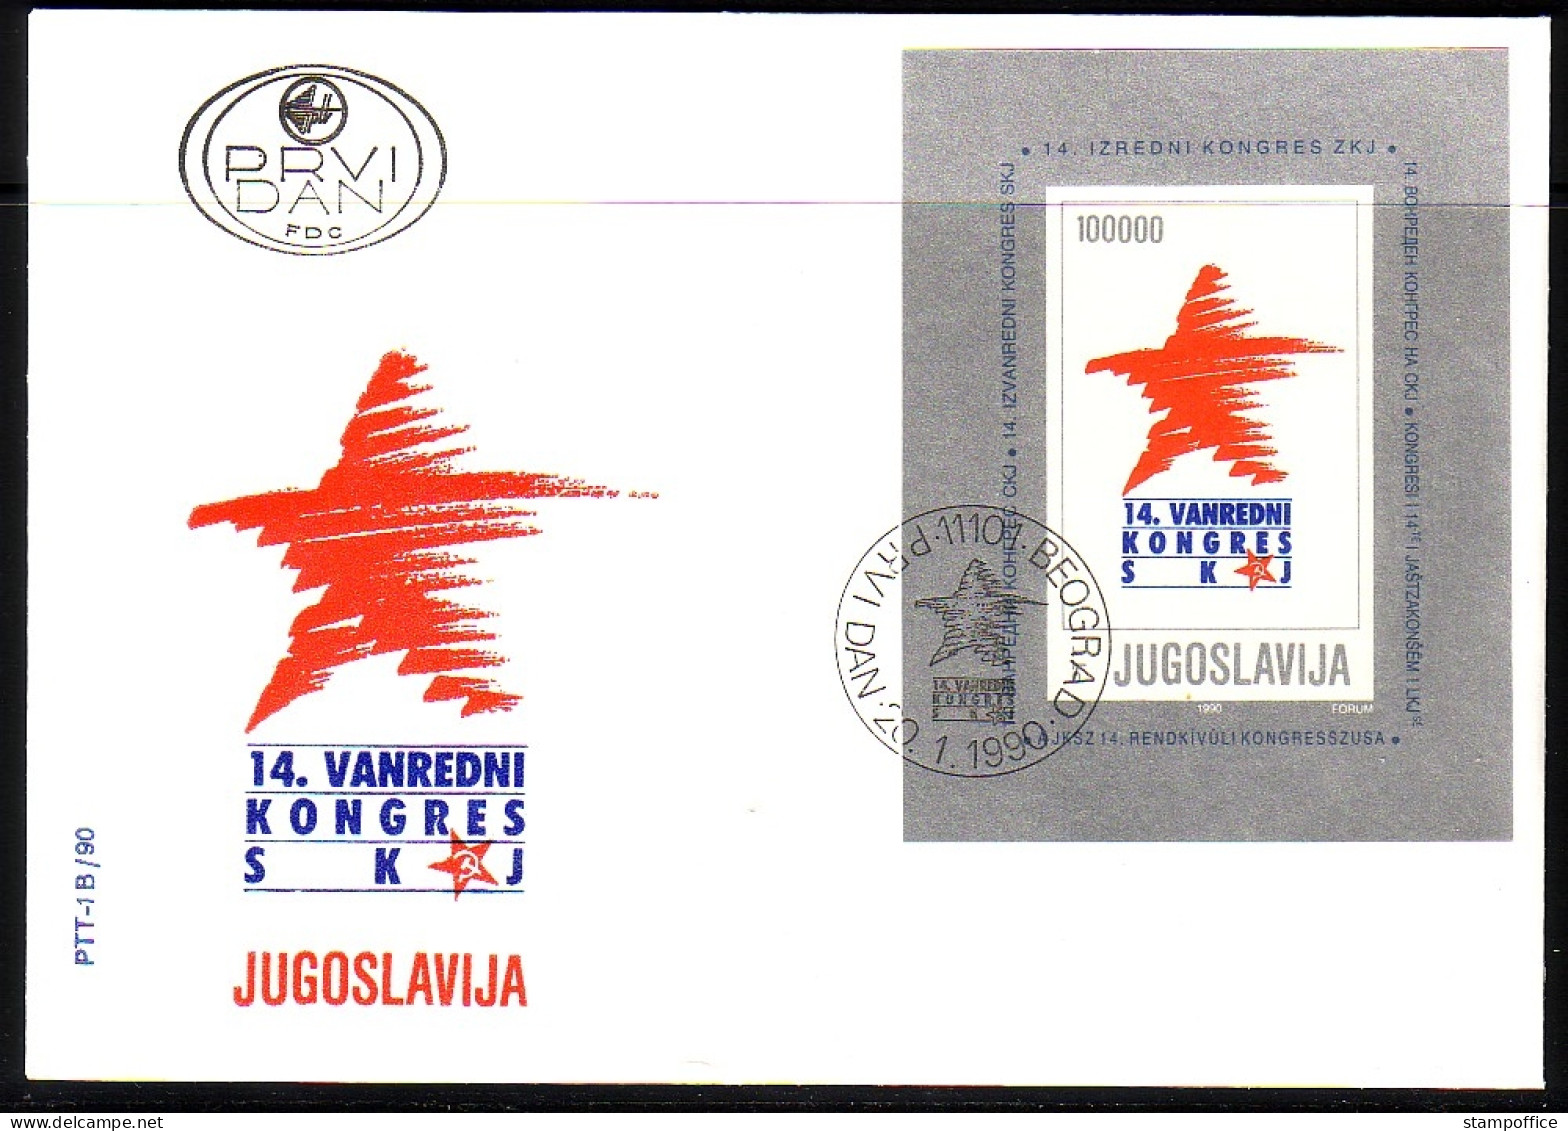 JUGOSLAWIEN BLOCK 36 FDC KONGRESS DER KOMMUNISTEN 1990 - Blocks & Sheetlets